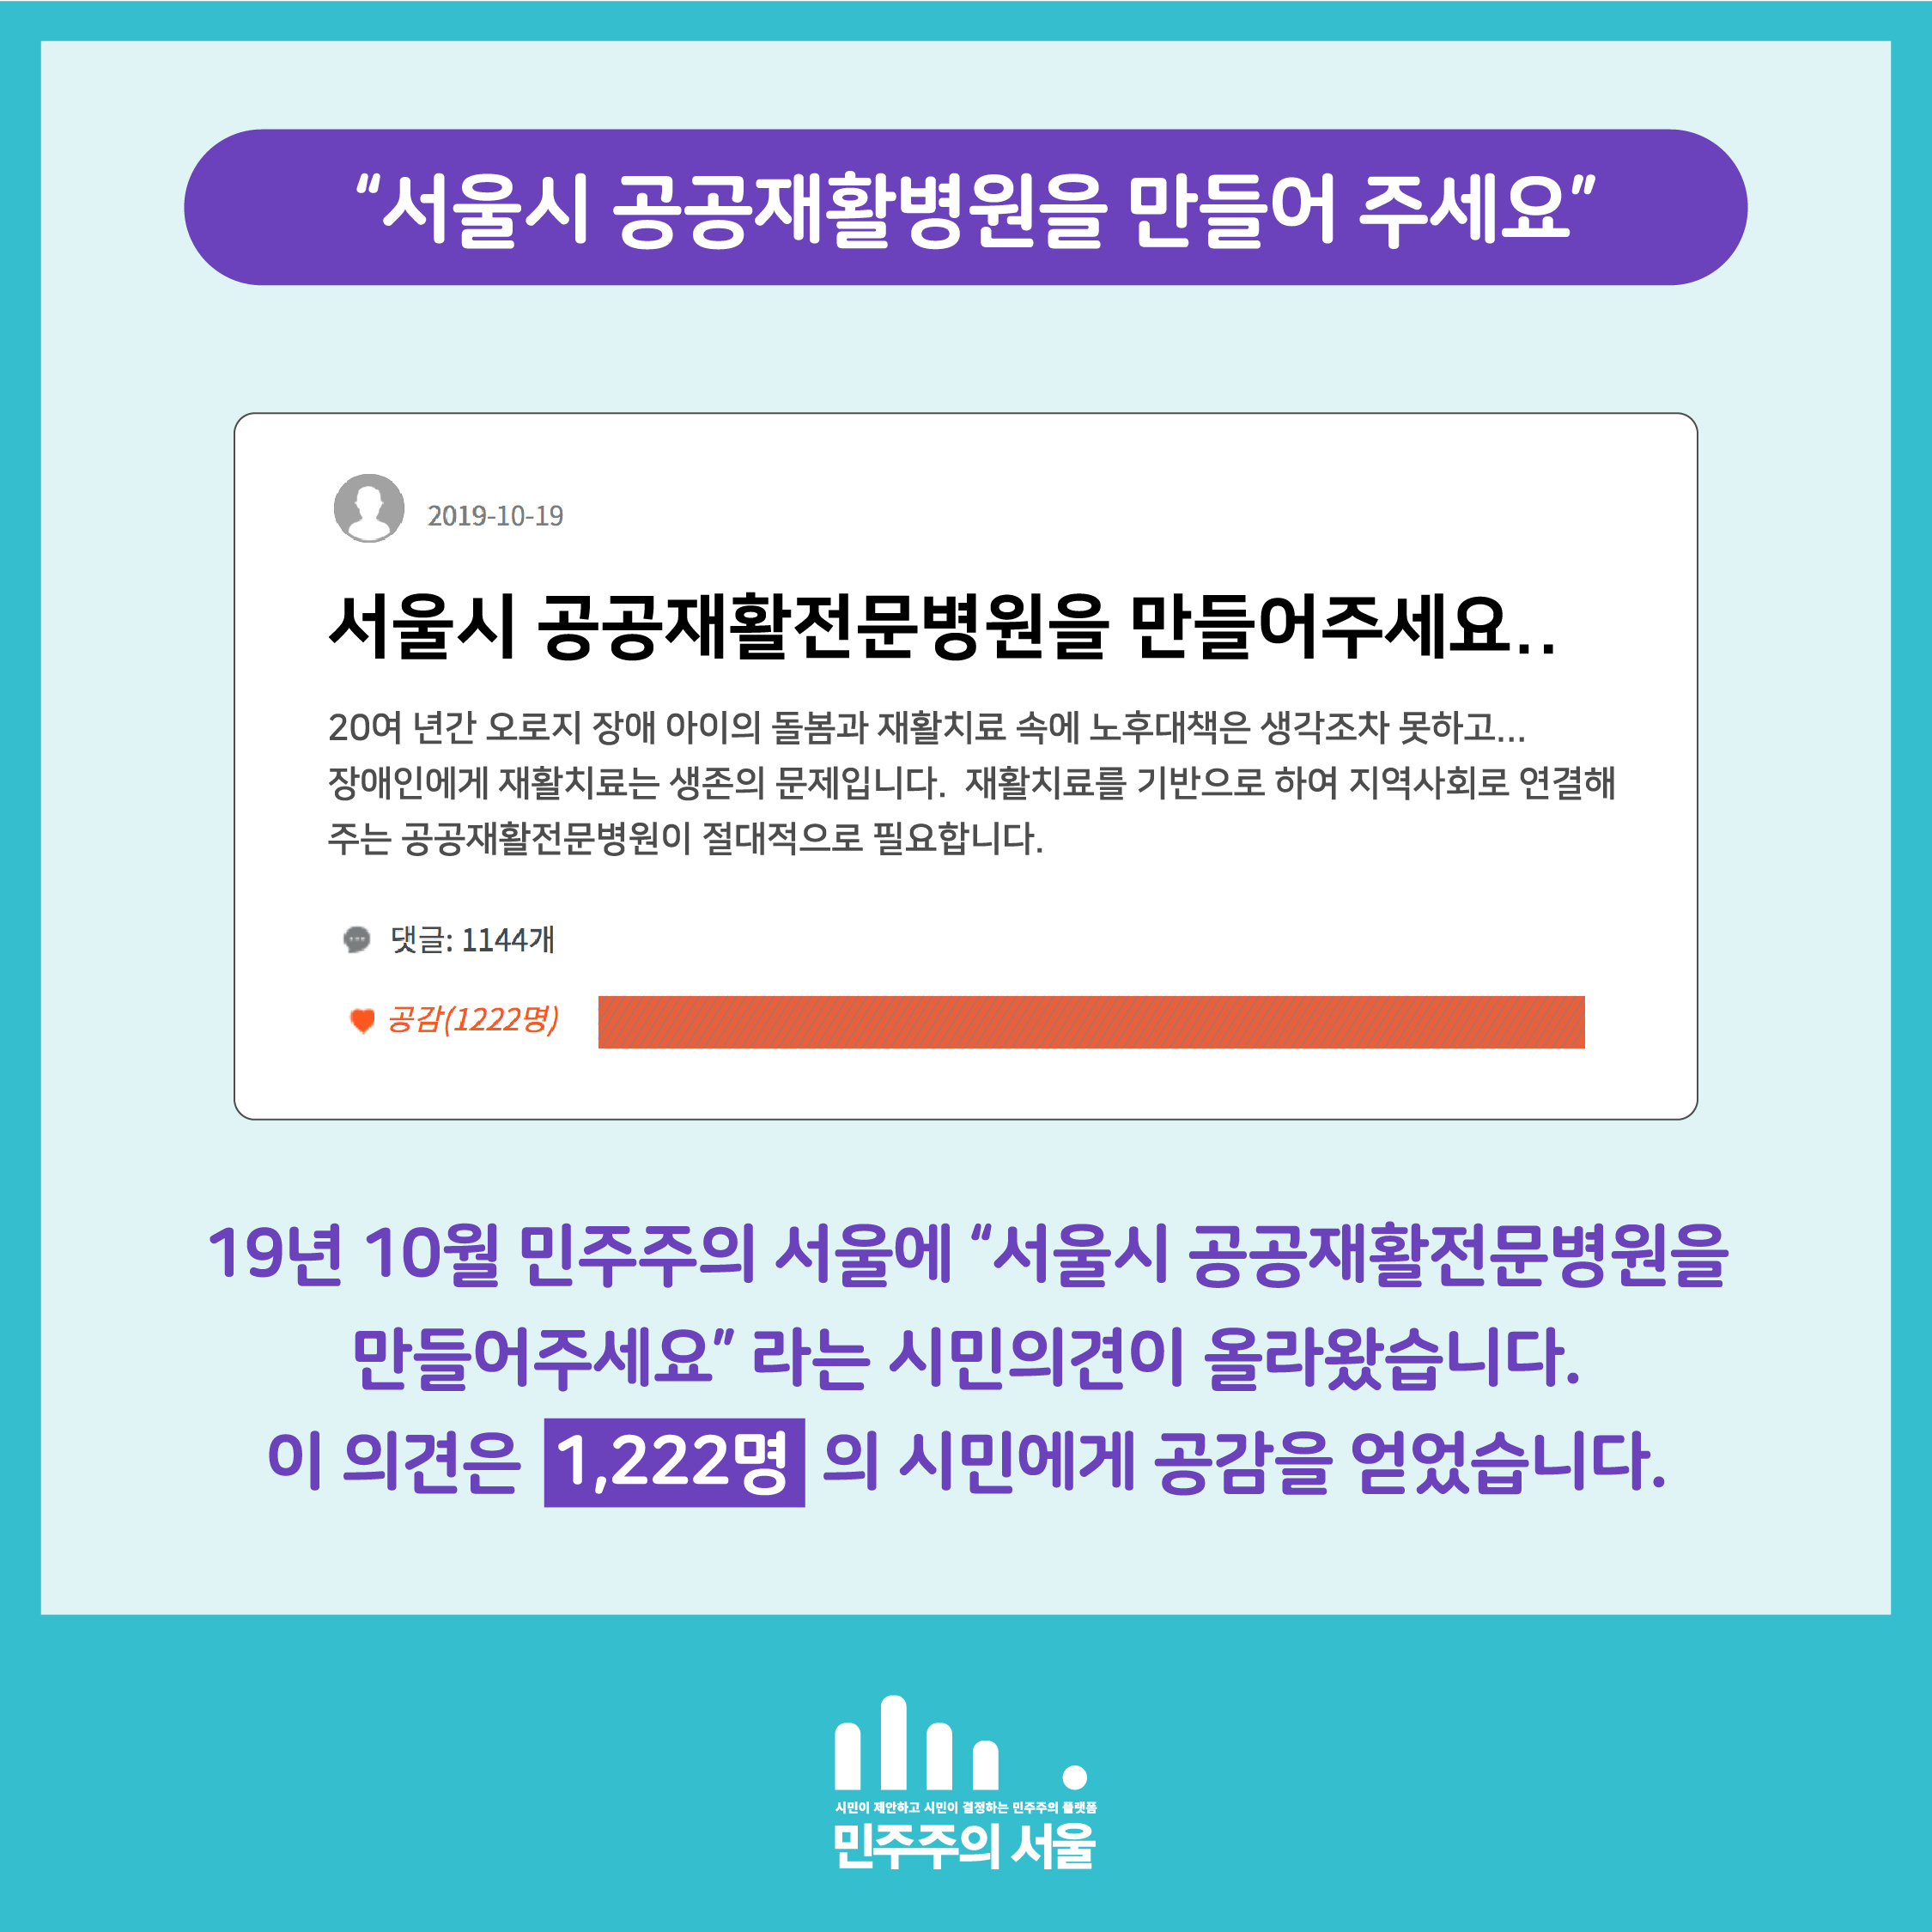 서울시 공공재활병원을 만들어 주세요 19년 10월 민주주의 서울에 서울시 공공재활전문병원을 만들어주세요 라는 시민의견이 올라왔습니다. 이 의견은 1,222명의 시민에게 공감을 얻었습니다.